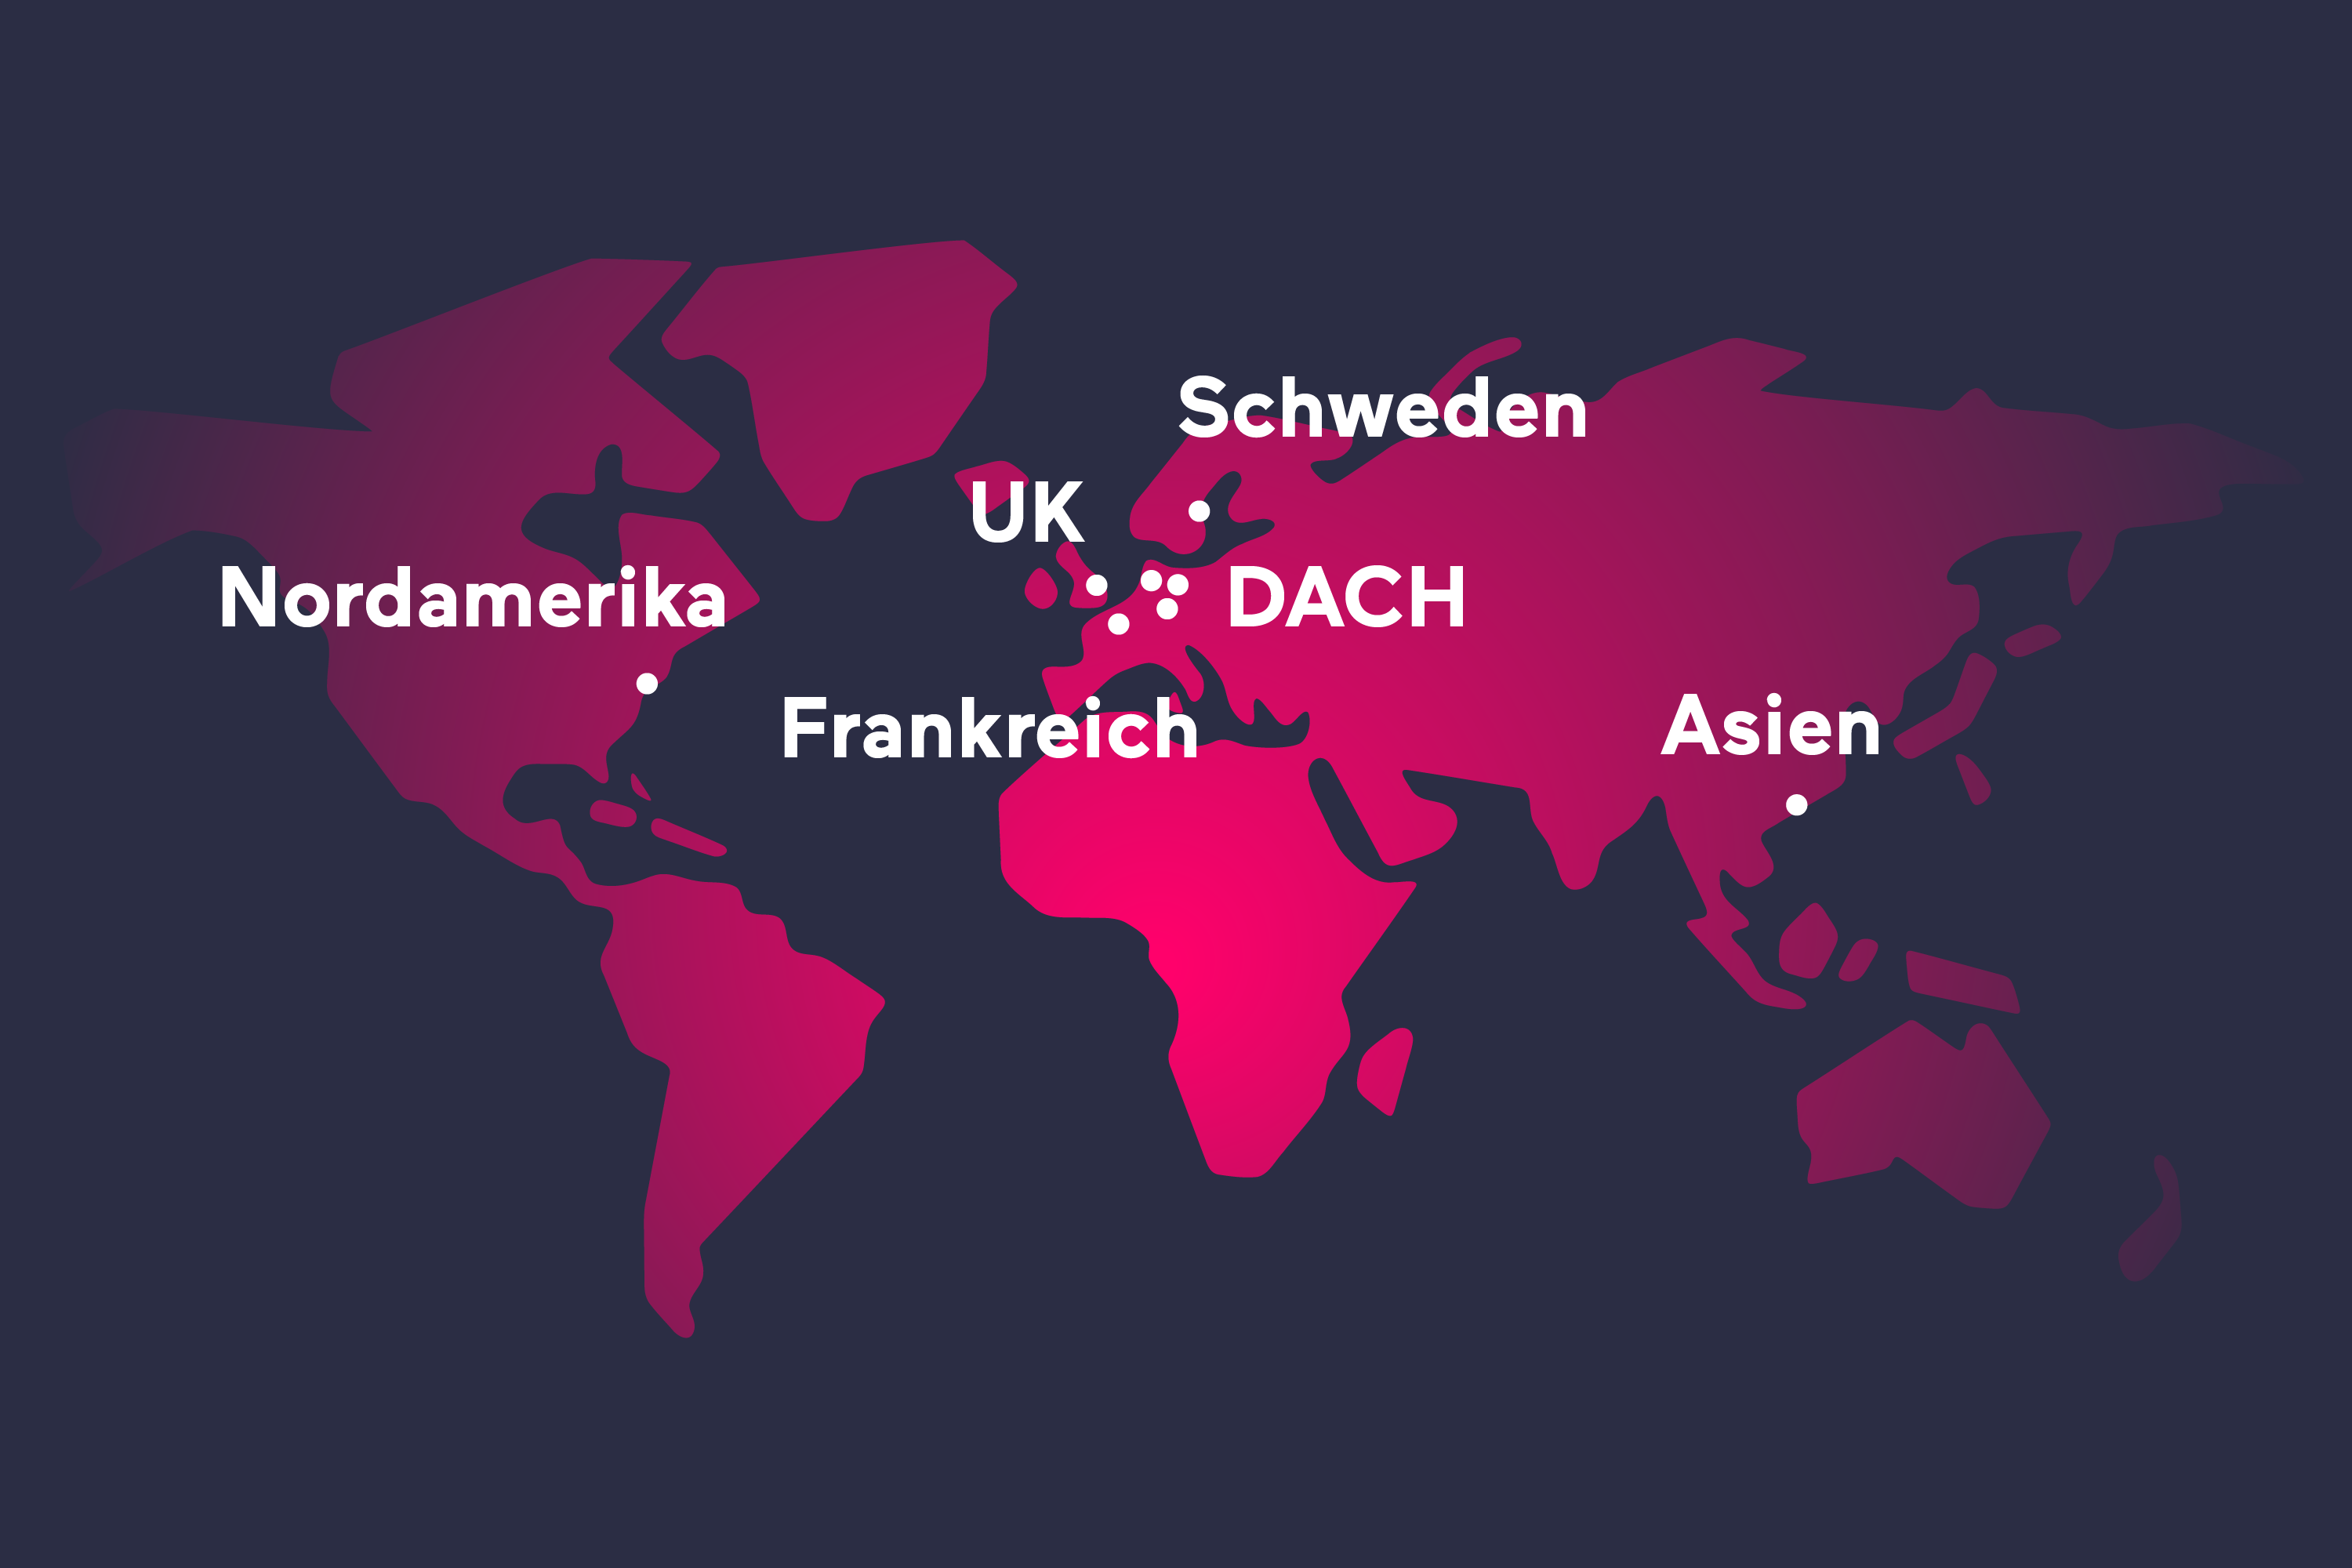 Standorte in DACH, UK, Frankreich, Schweden, Nordamerika, Asien